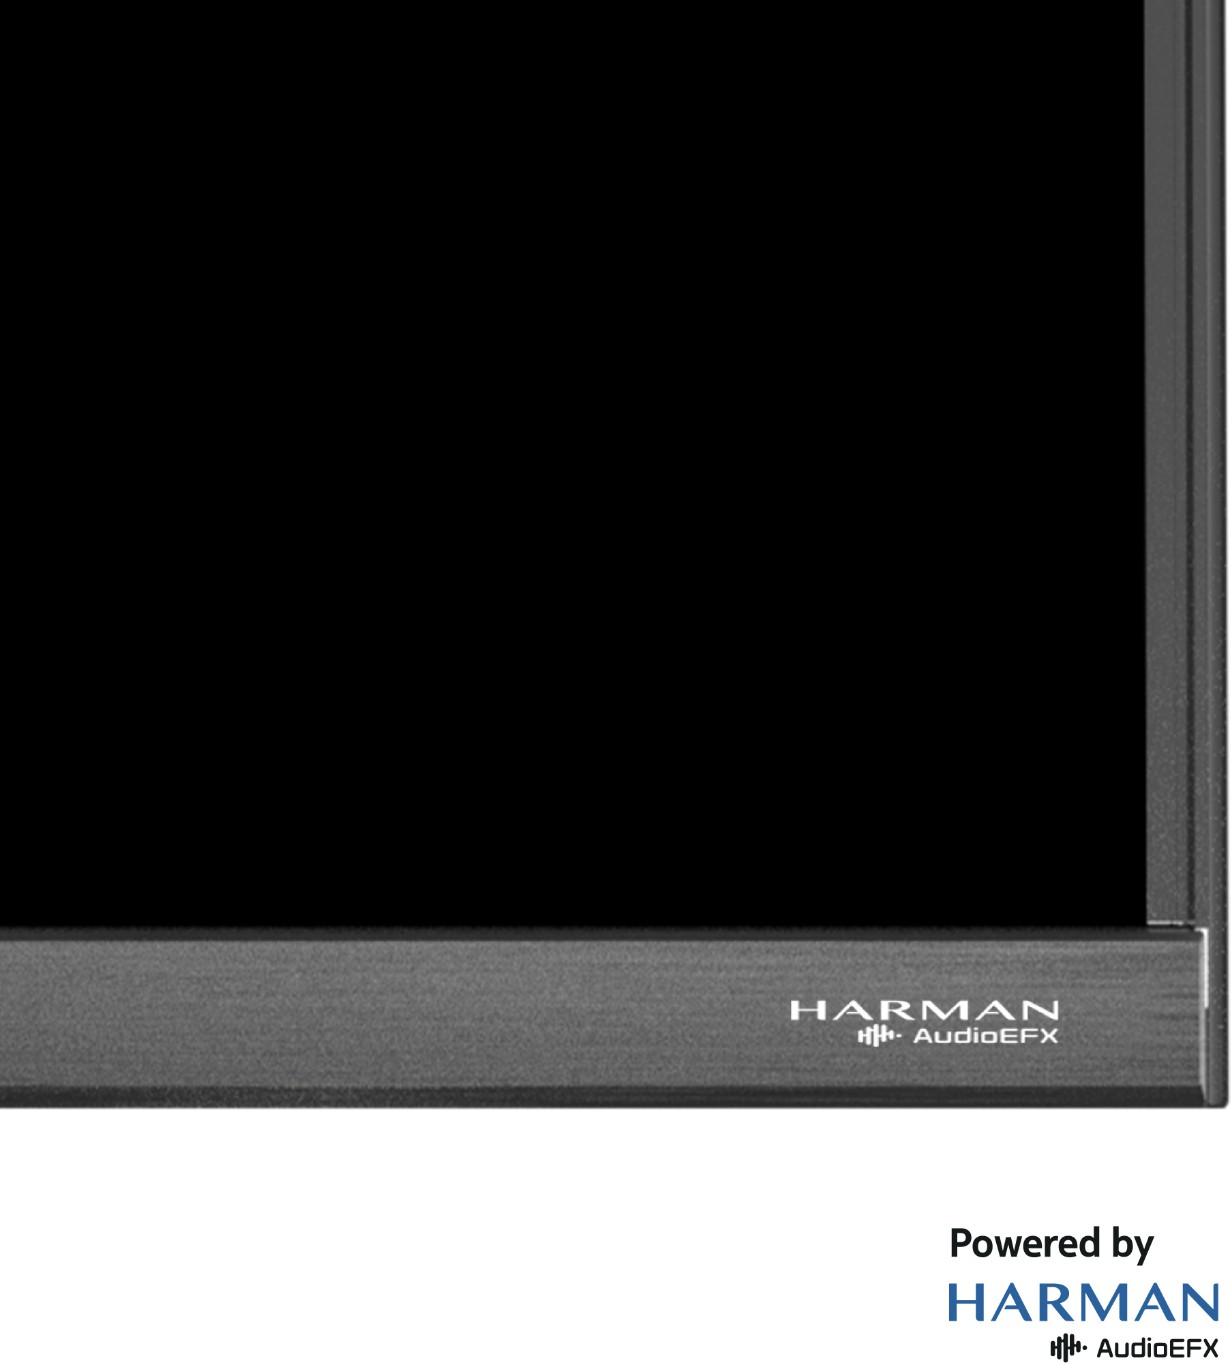 Nokia   (50 inch) Ultra HD (4K)VA Panel (50UHDAQNDT5Q)